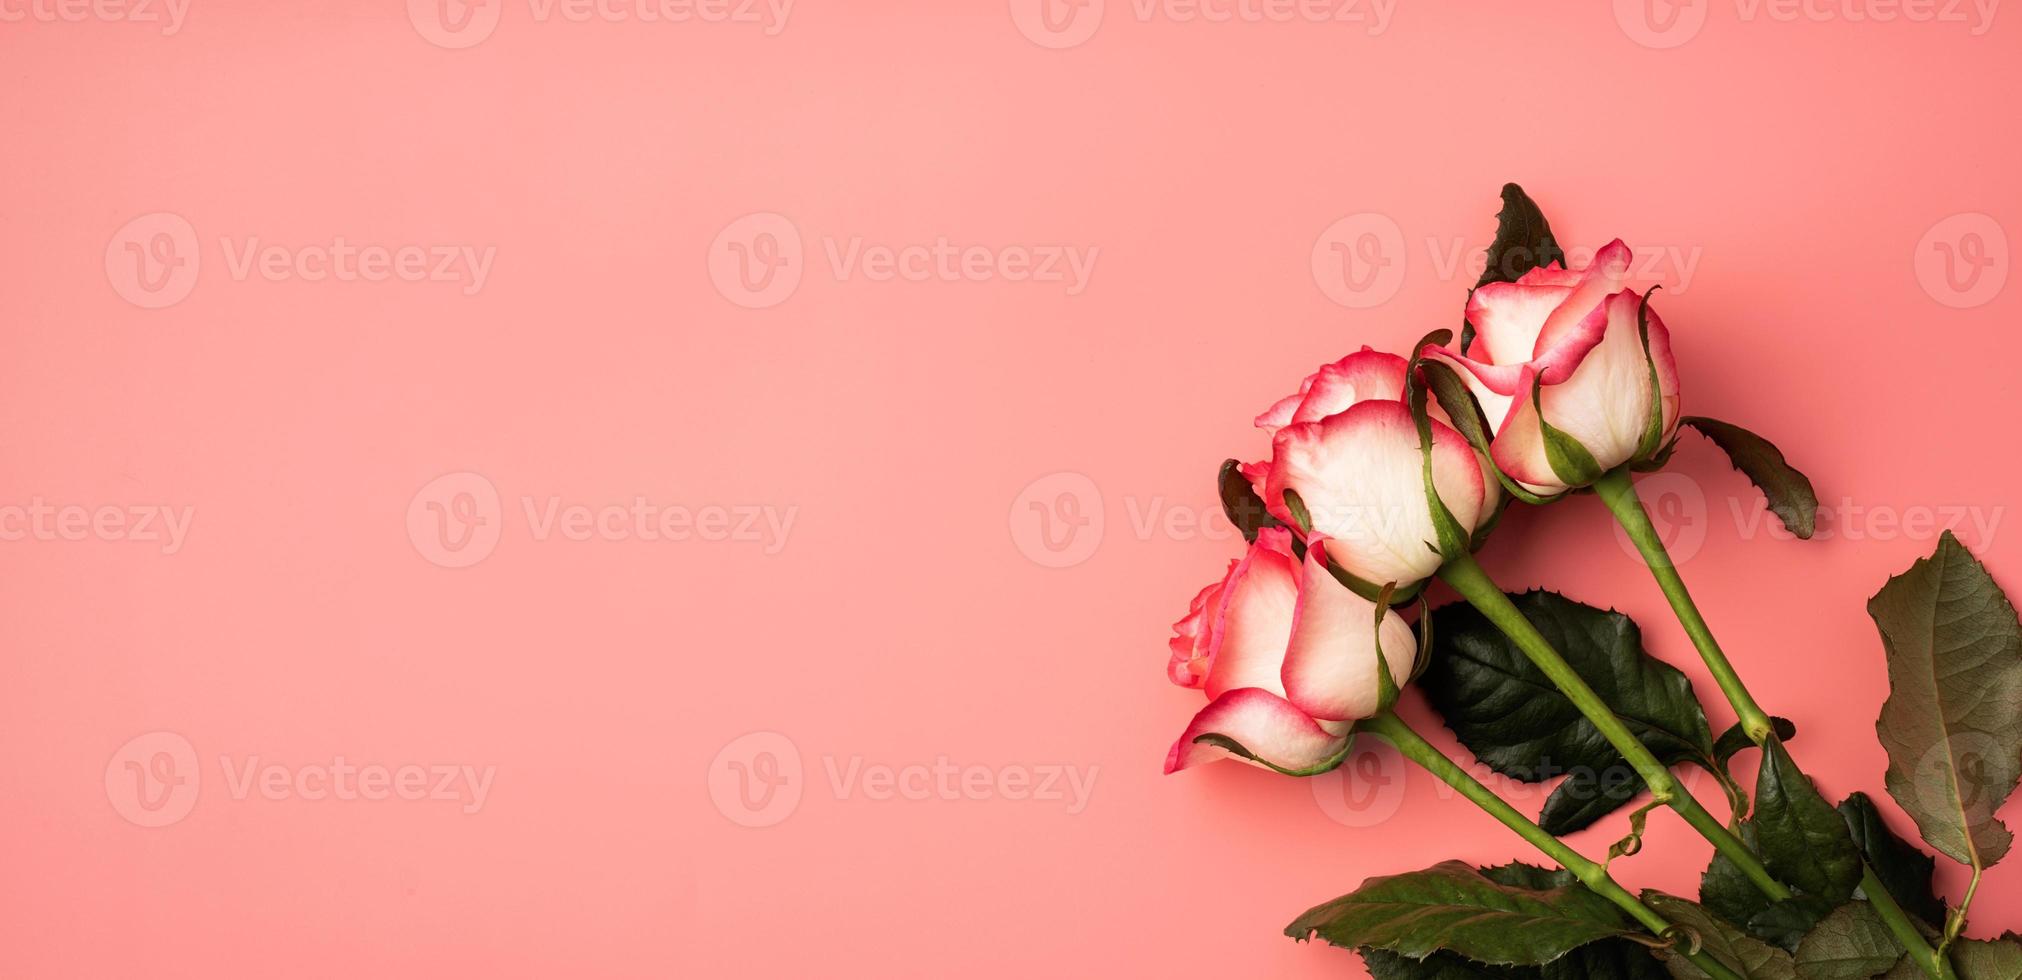 roze rozen op effen roze achtergrond foto